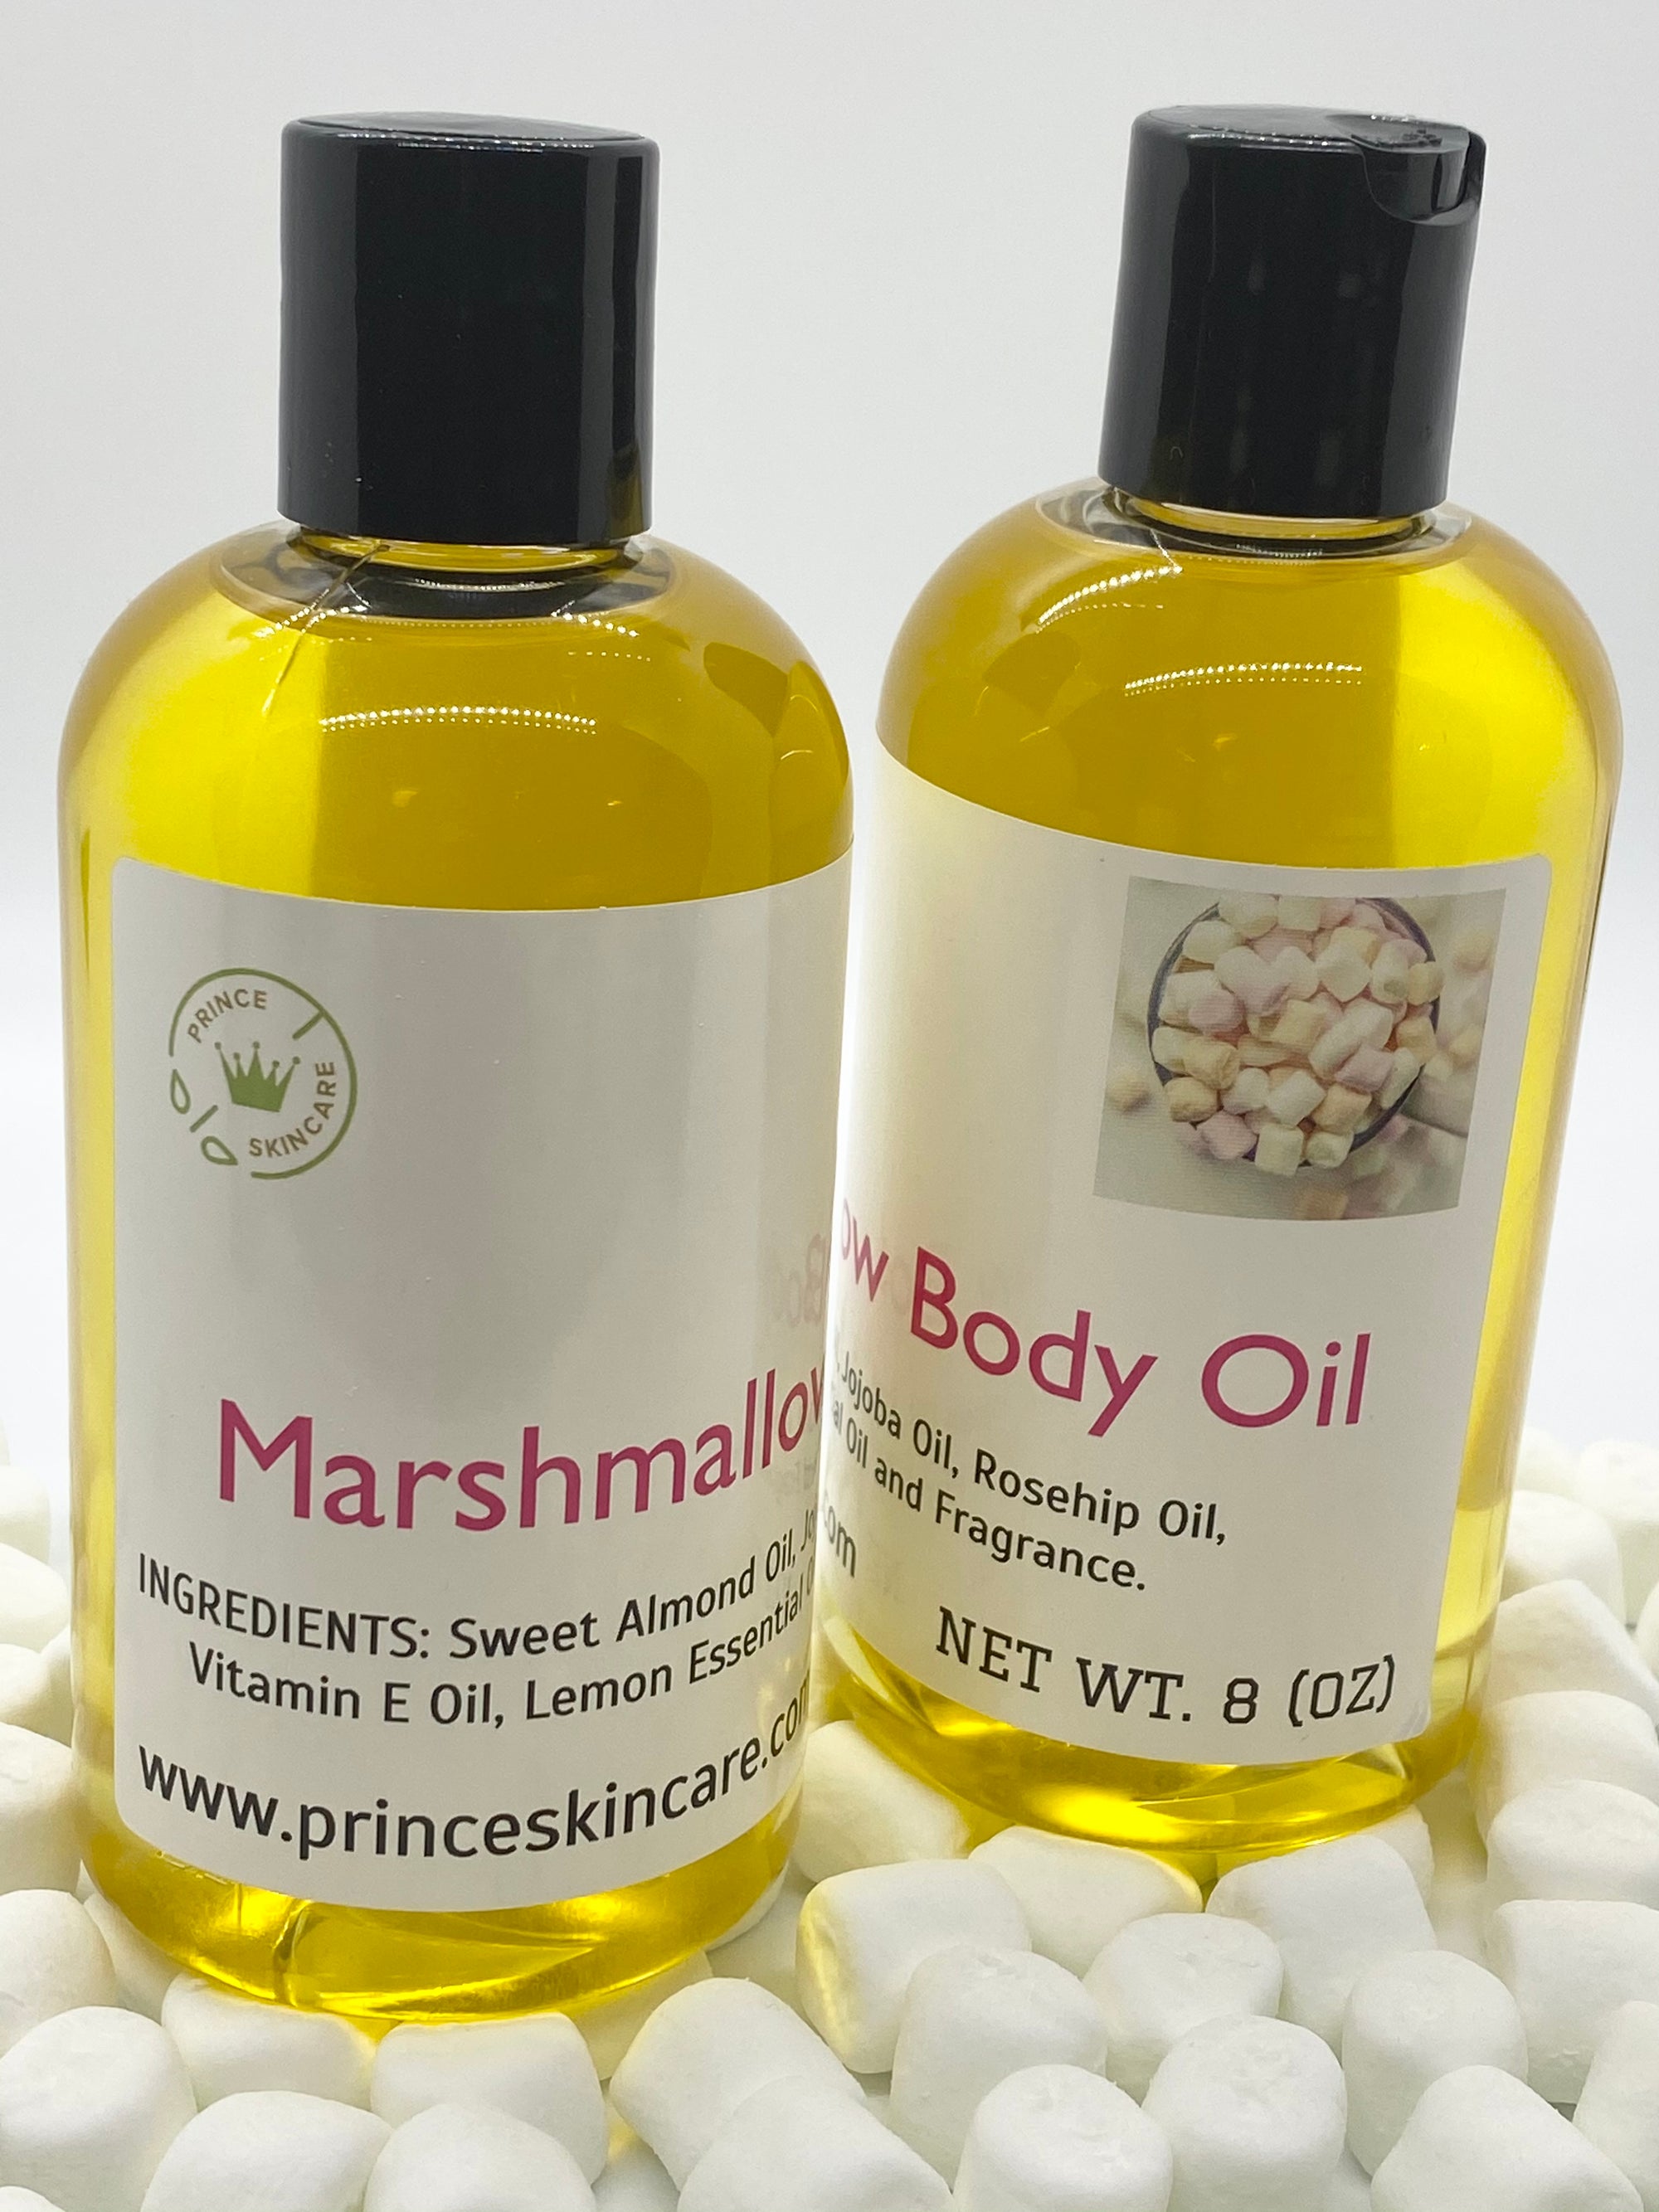 Marshmallow Body Oil